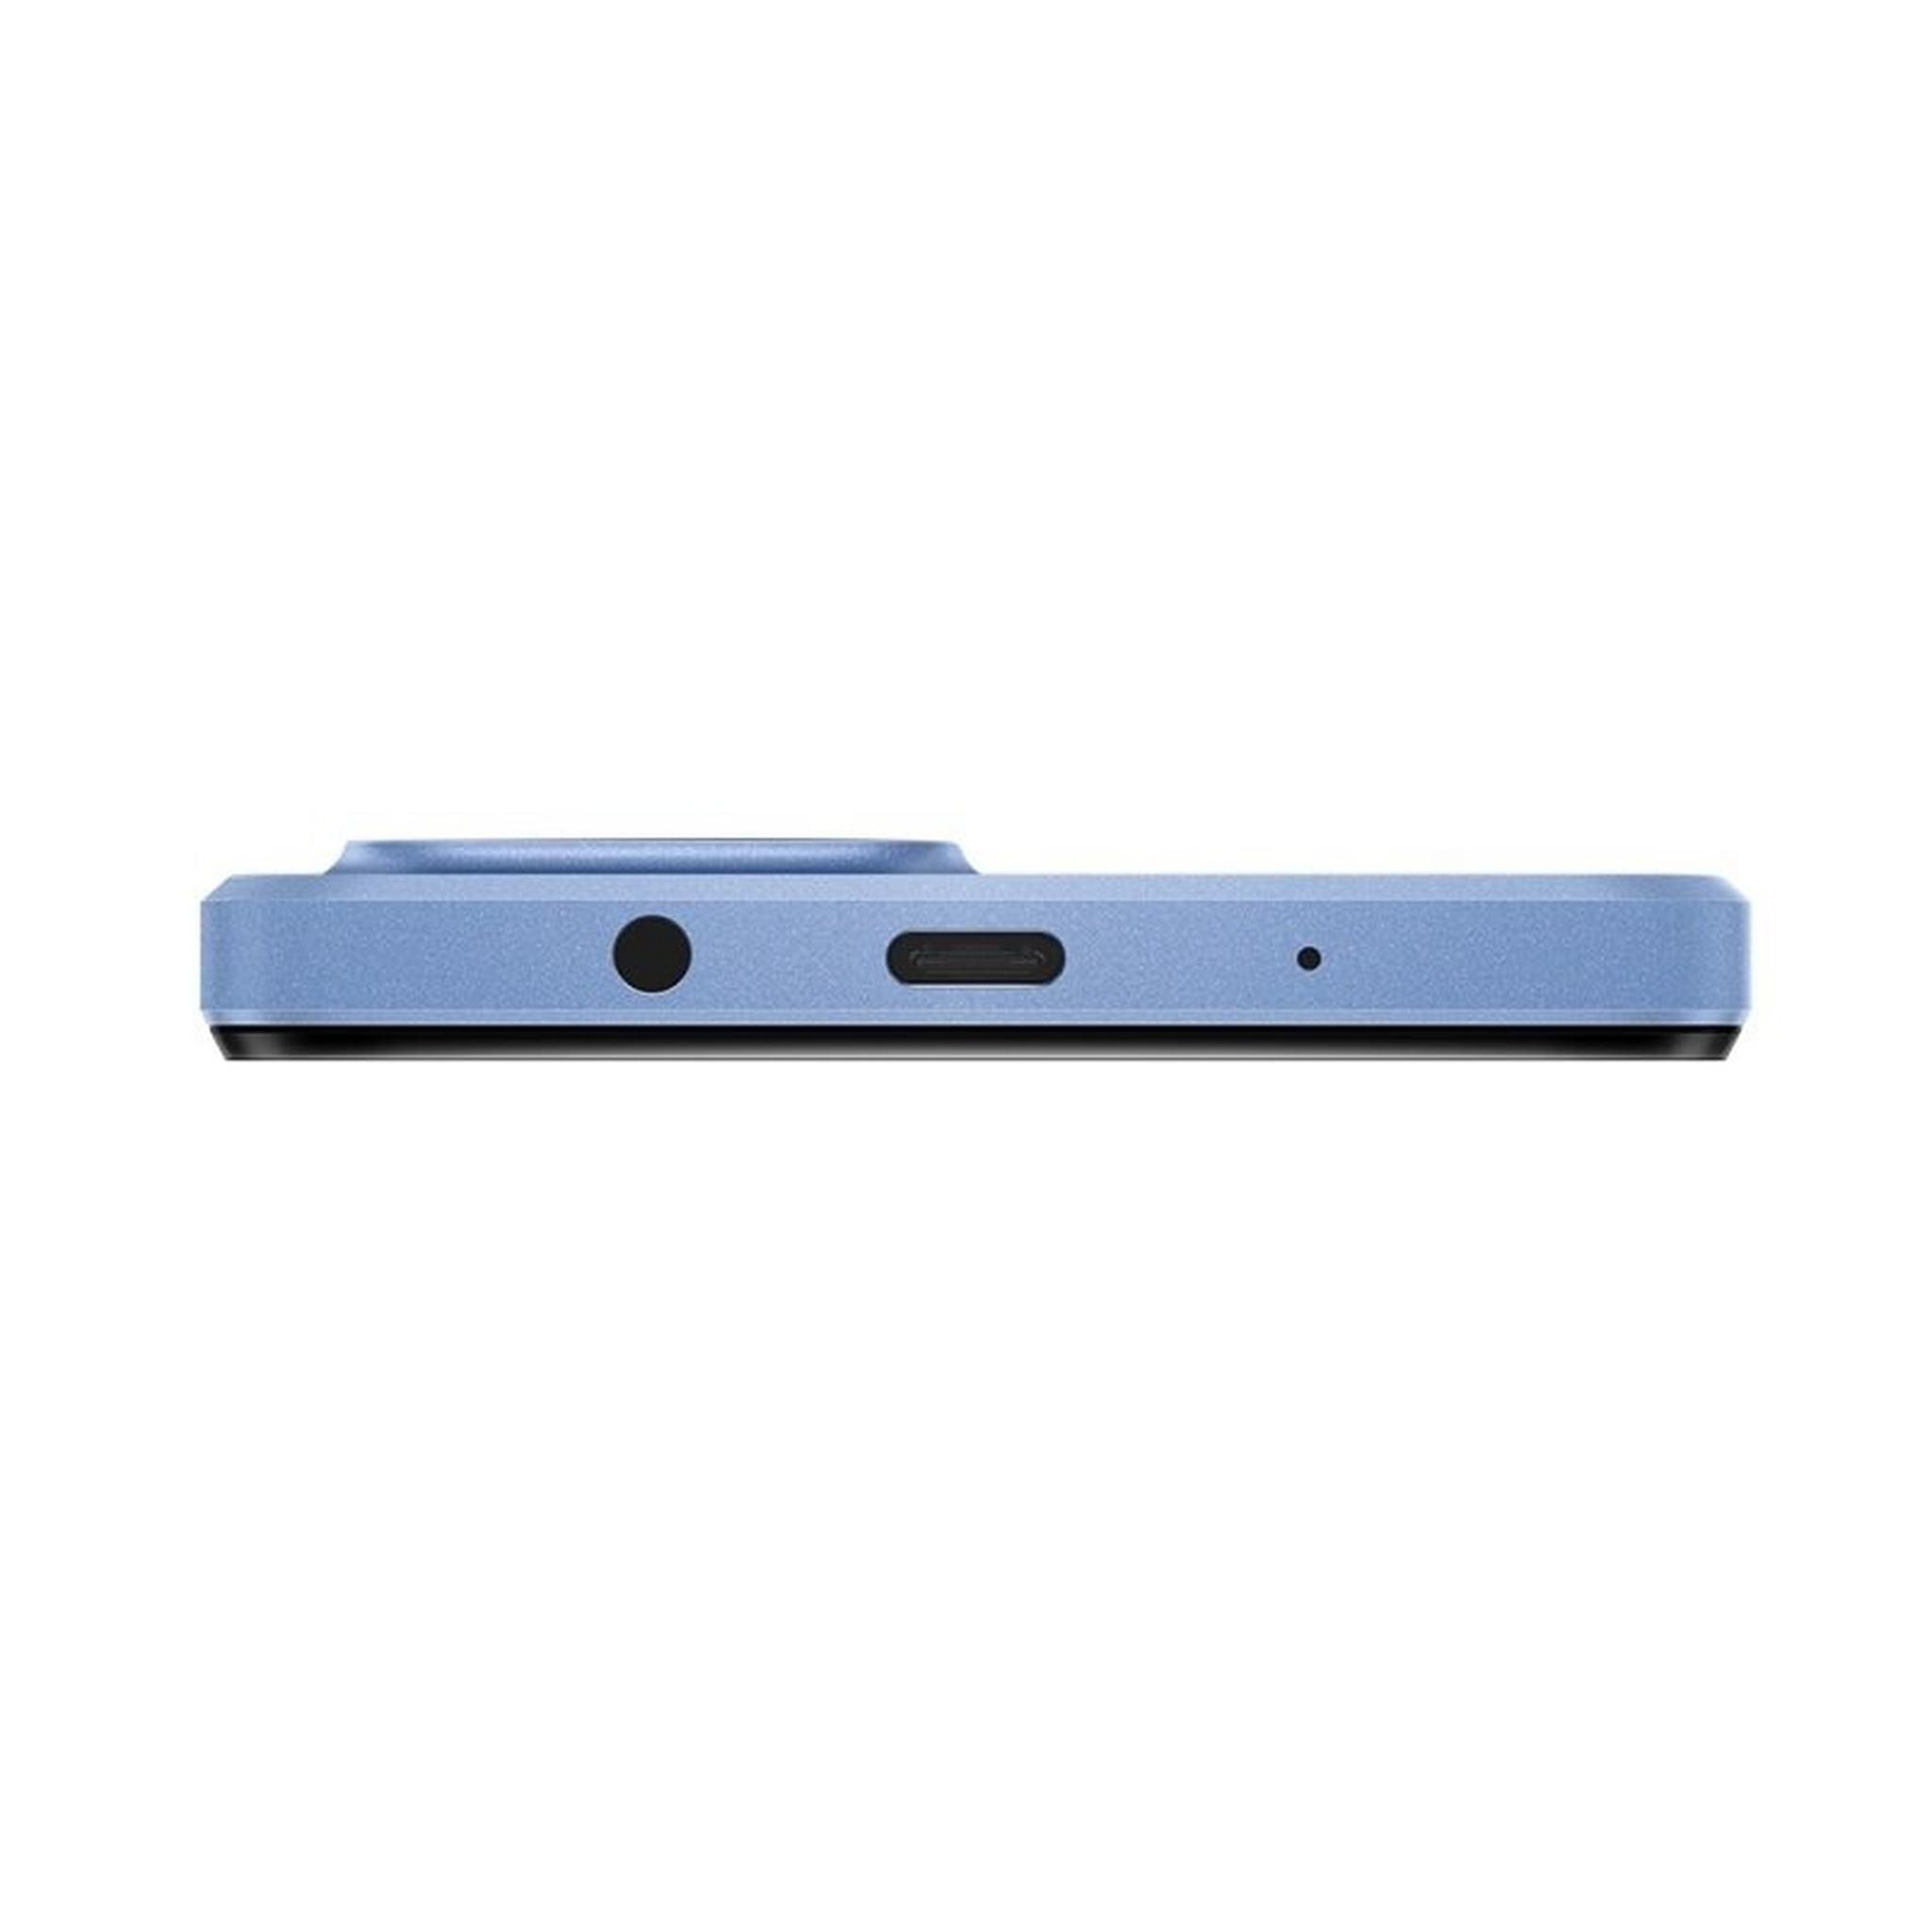 هاتف هواوي نوفا واي 61 بسعة 64 جيجابايت - أزرق